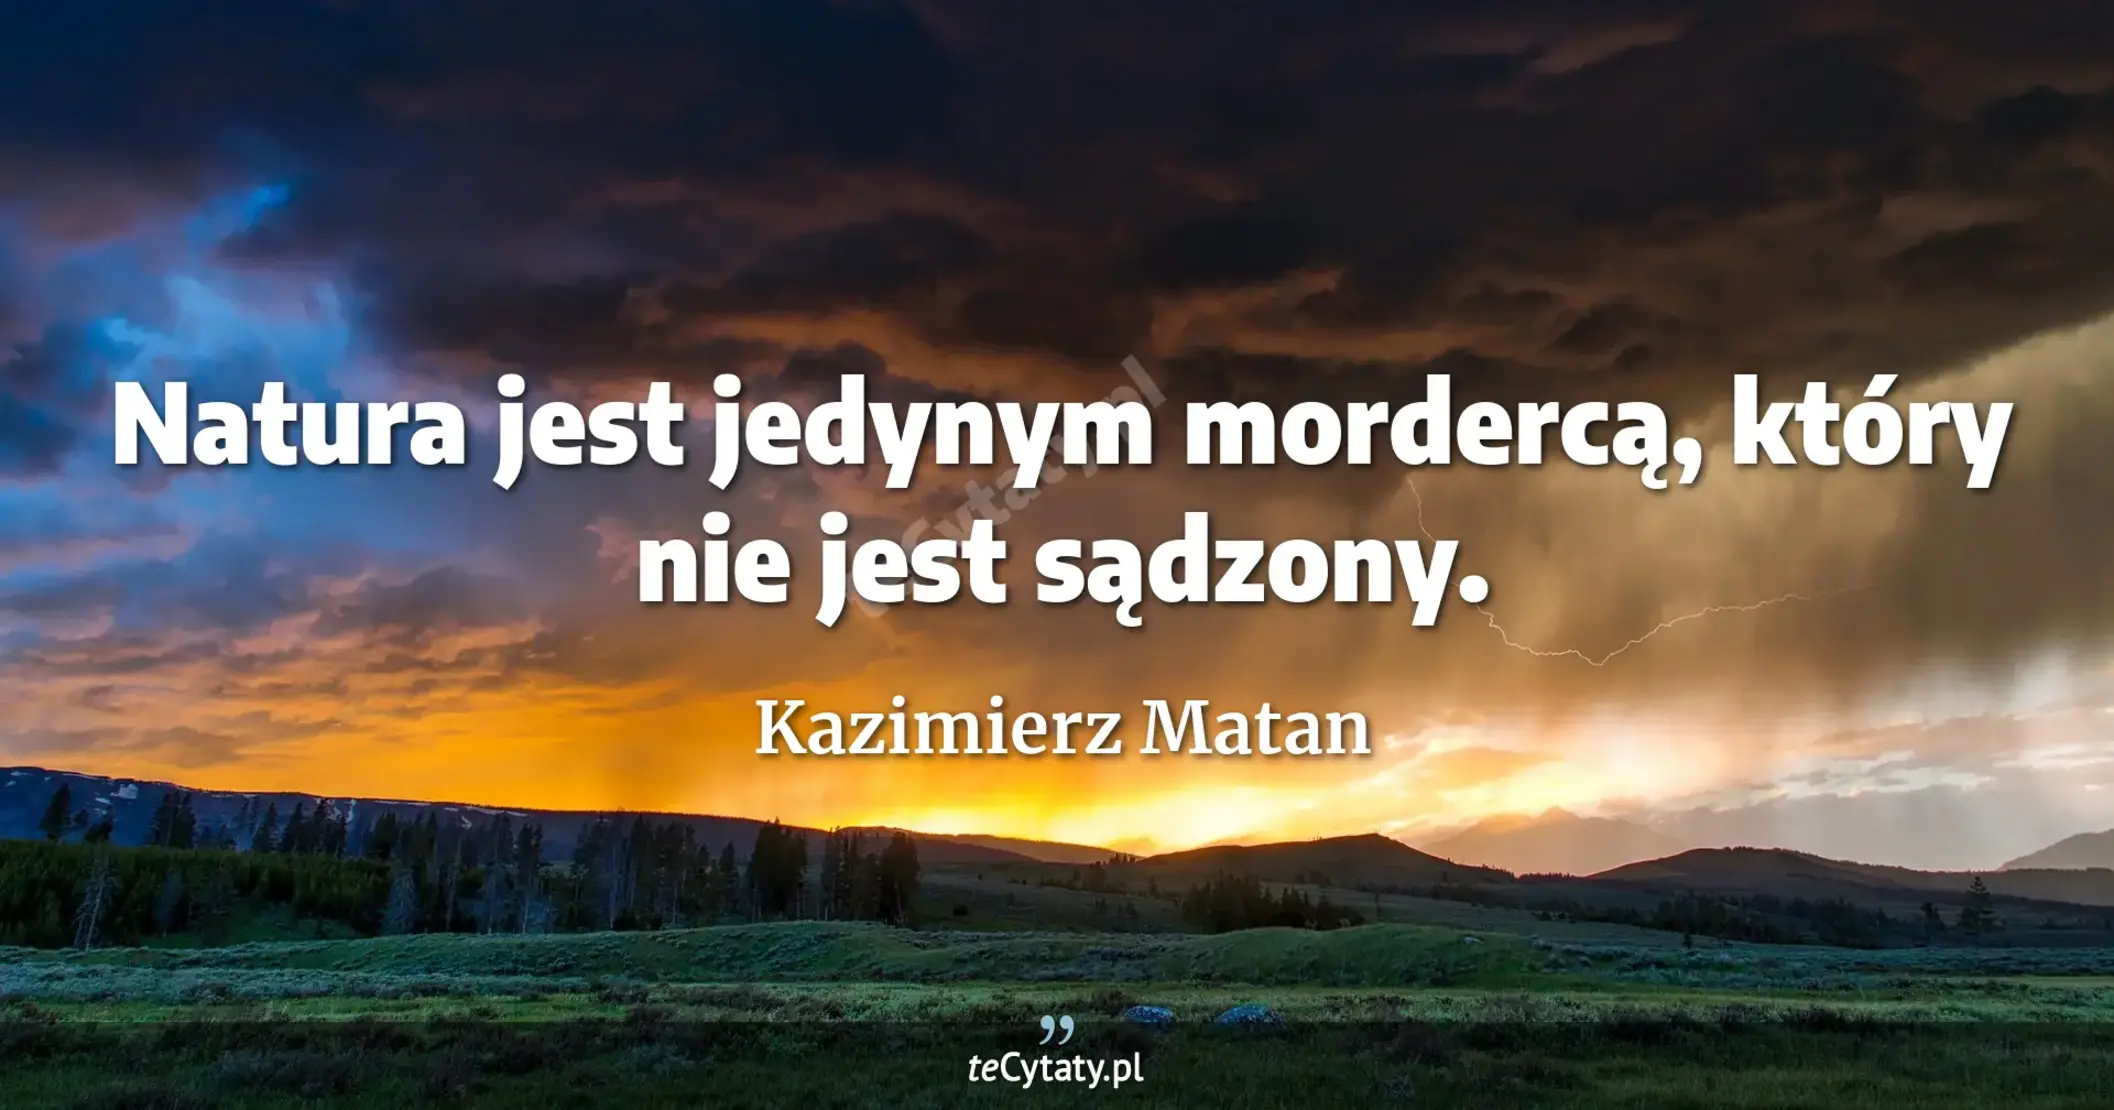 Natura jest jedynym mordercą, który nie jest sądzony. - Kazimierz Matan